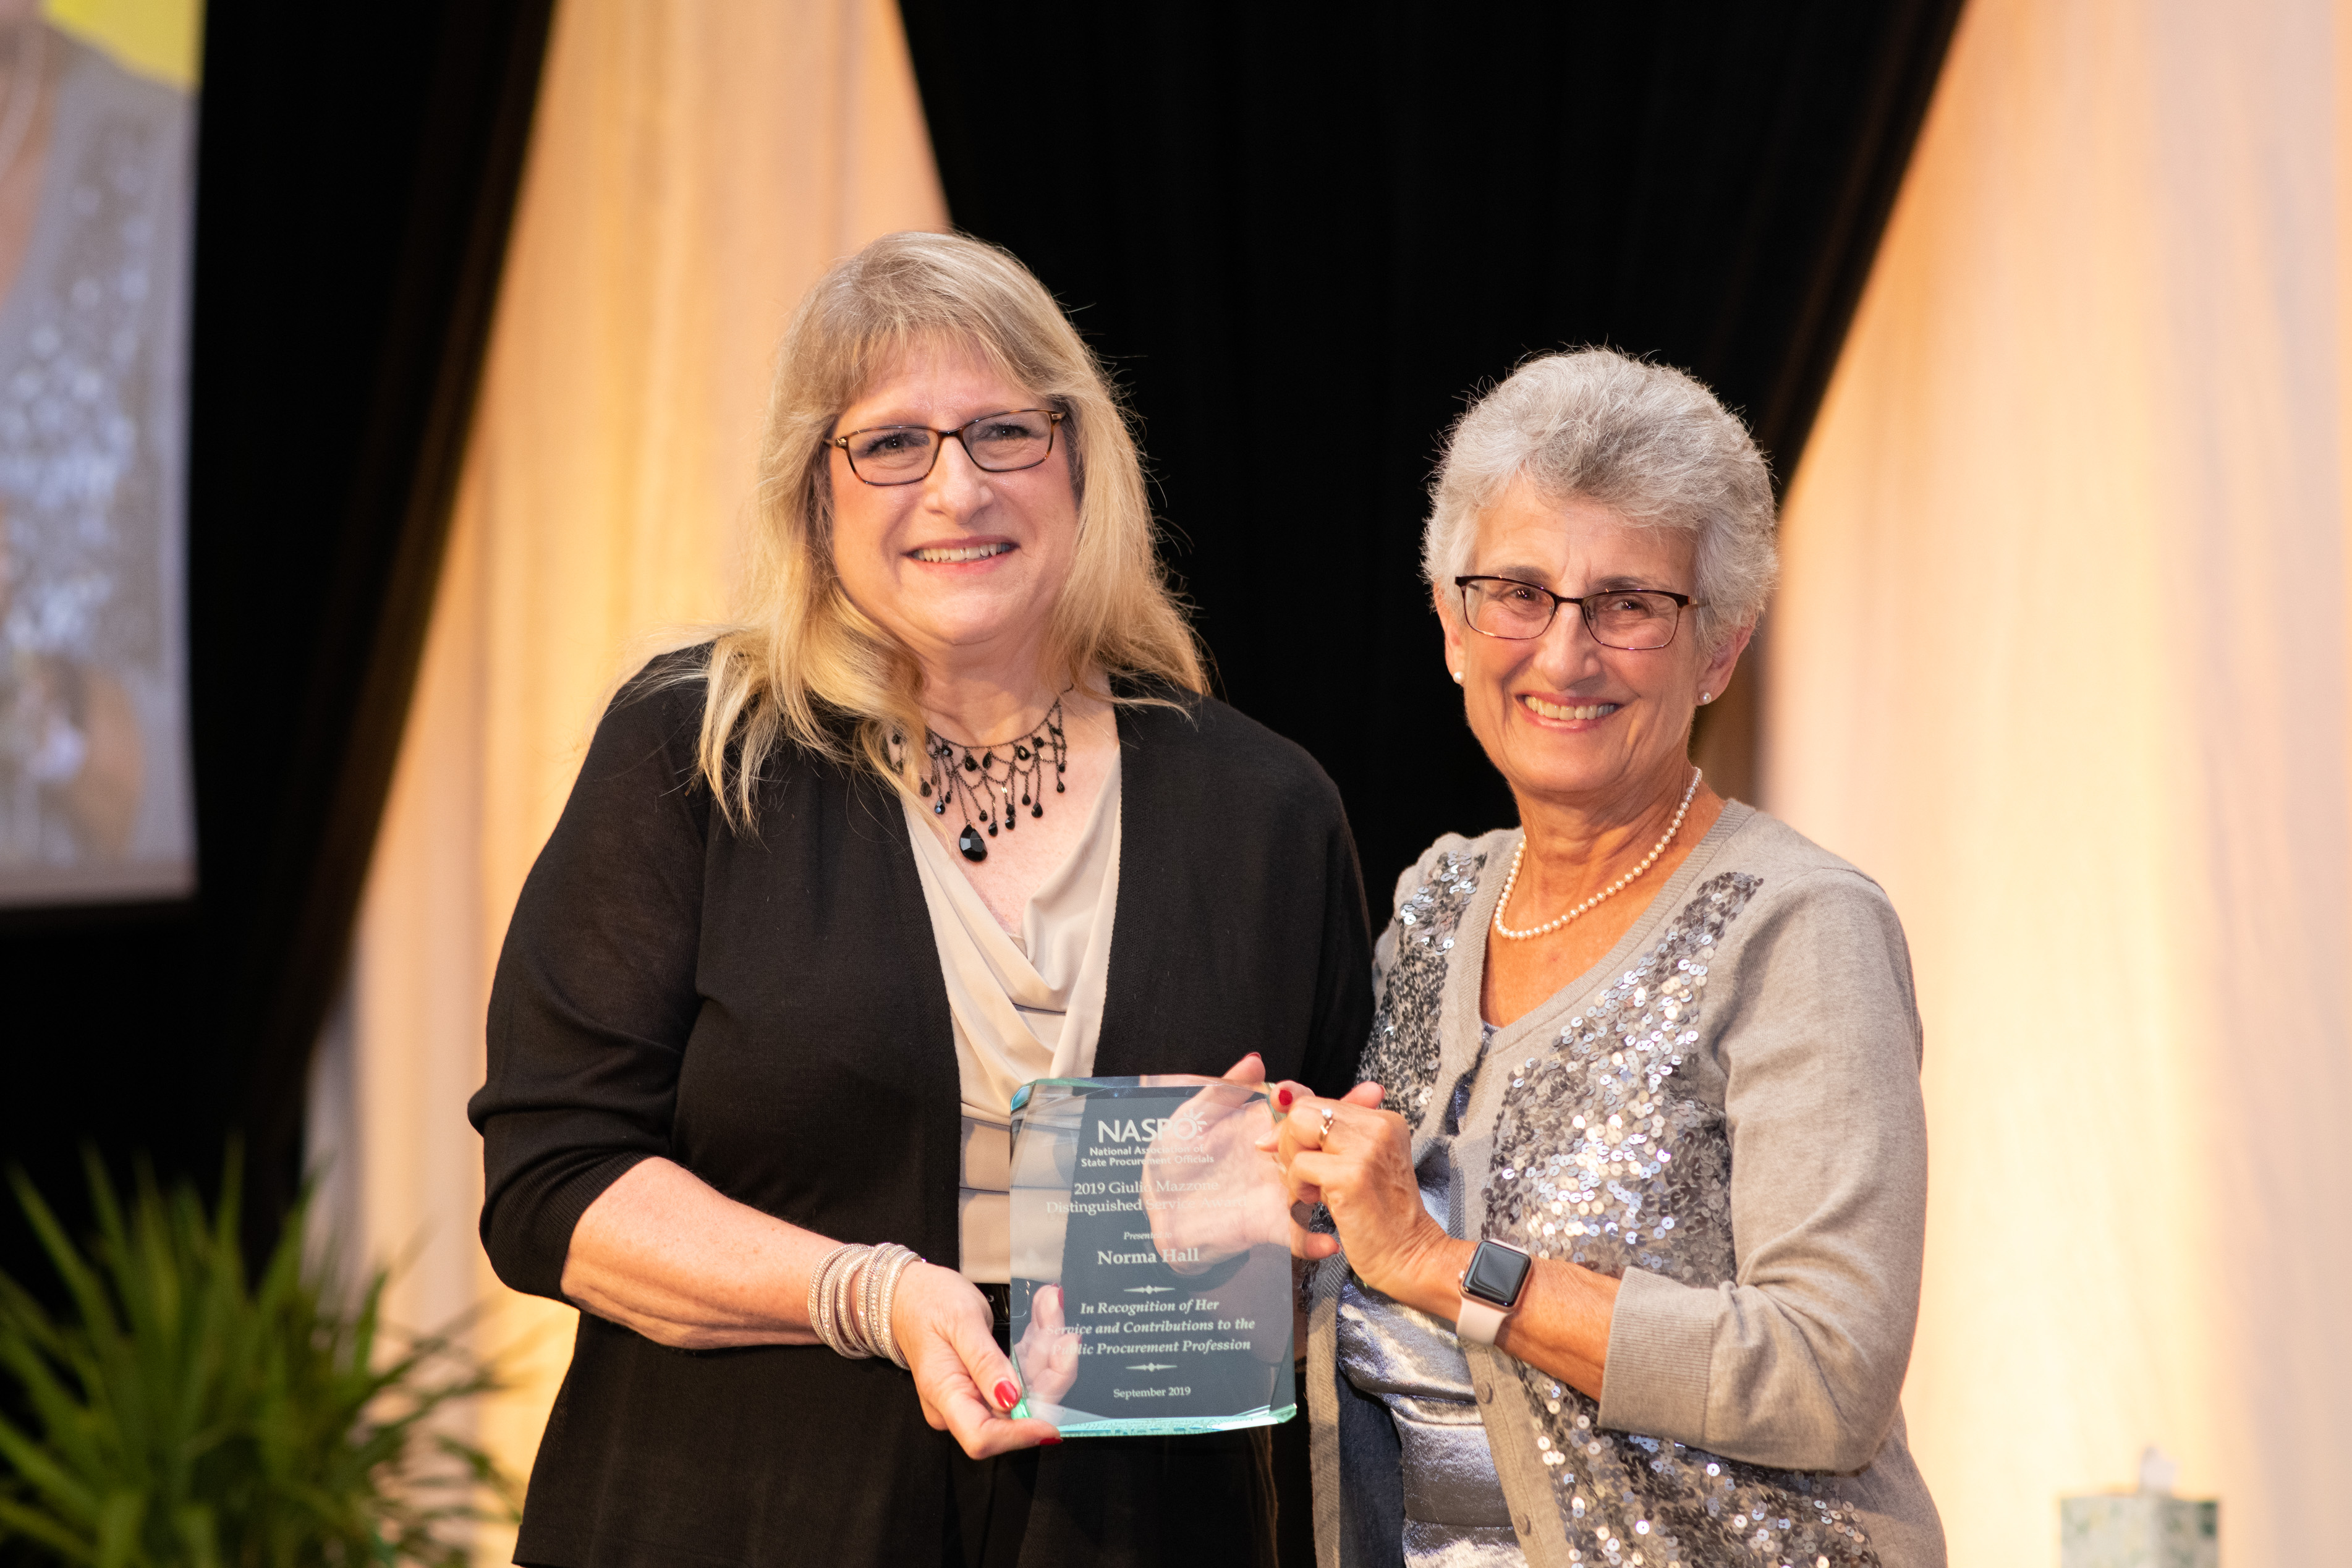 2019 Mazzone Award winner, Norma Hall and 2019 Mazzone Committee Chair, Monica Wilkes